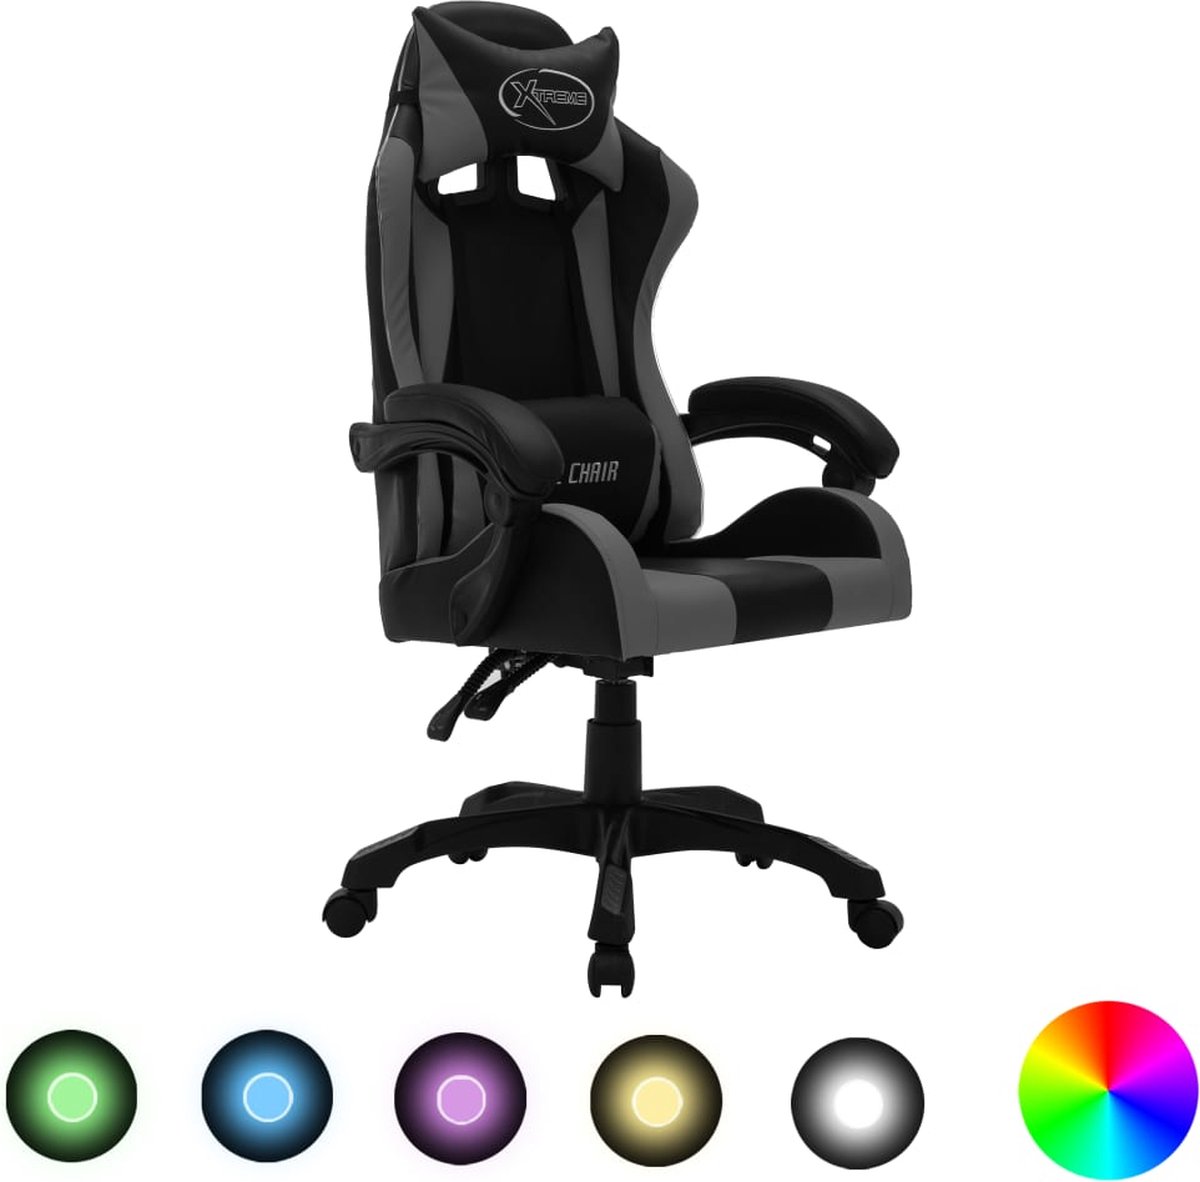 Prolenta Premium - Racestoel met RGB LED-verlichting kunstleer grijs en zwart